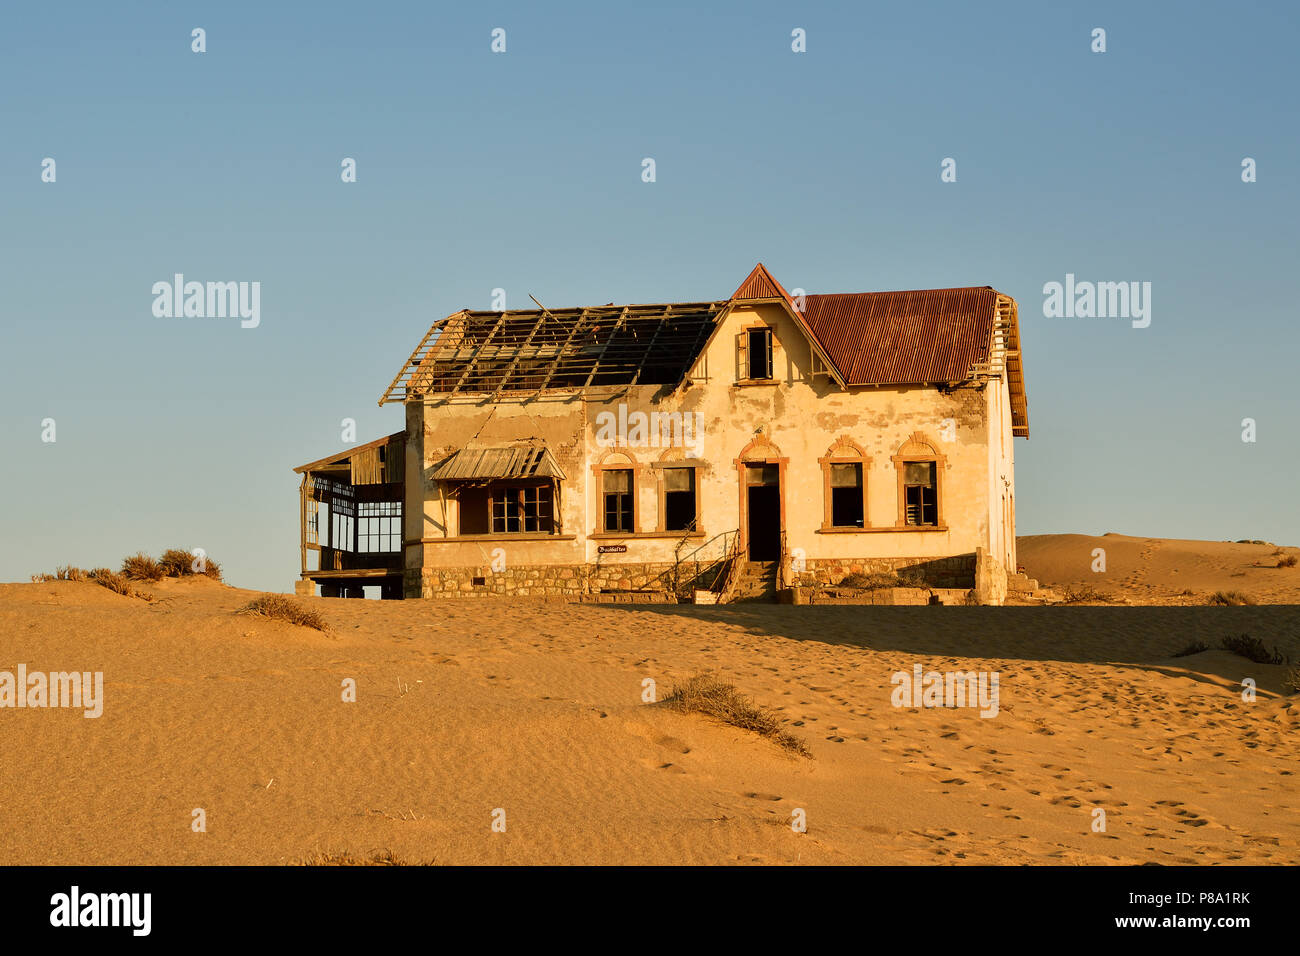 Casa decadente del contador de la antigua ciudad de diamante, la ciudad fantasma de Kolmanskop, Kolmanskop, Lüderitz, Namibia Foto de stock